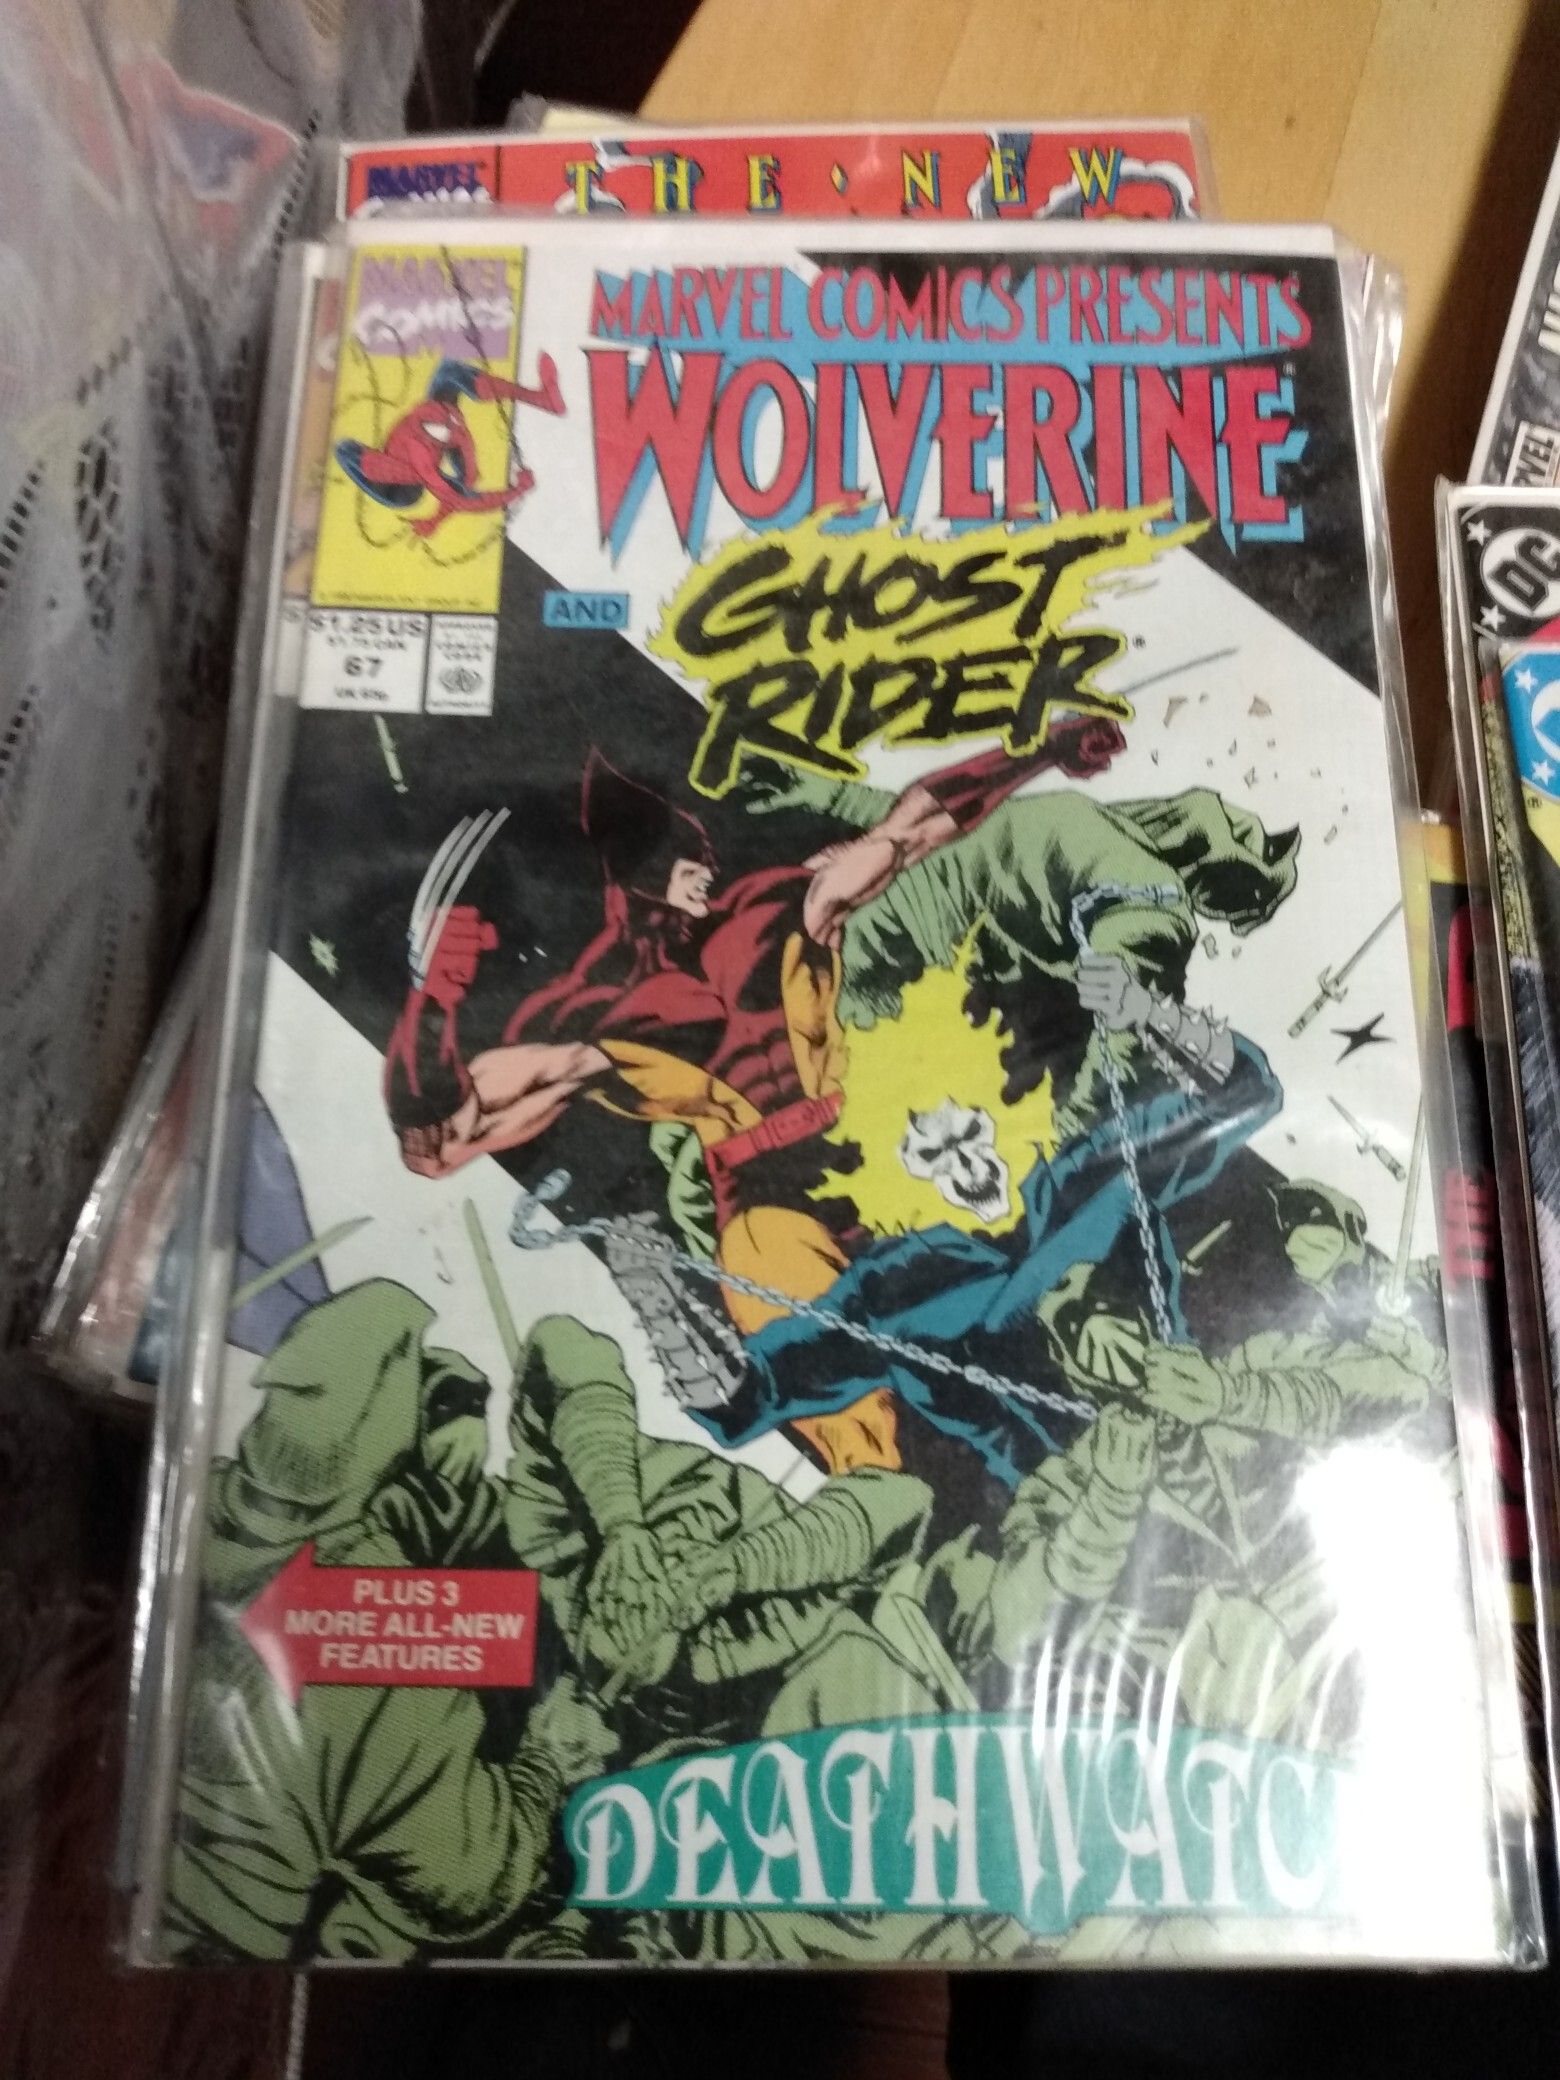 Wolverine / Ghost Rider #67